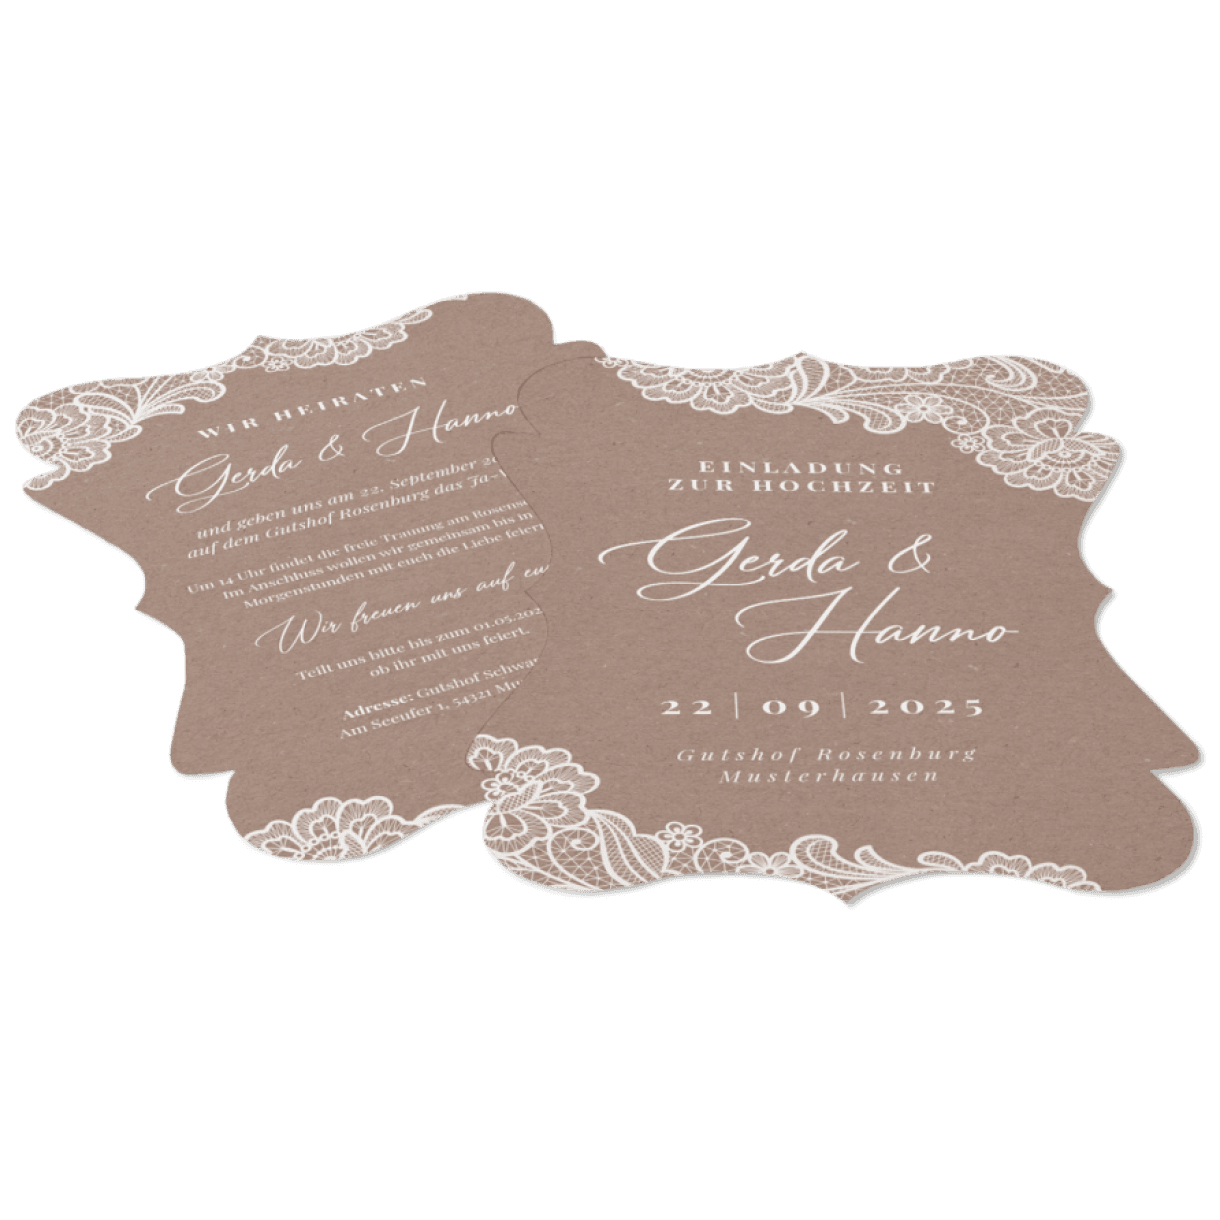 Hochzeitseinladung in Kraftpapieroptik mit aufgedruckter Spitze - carinokarten